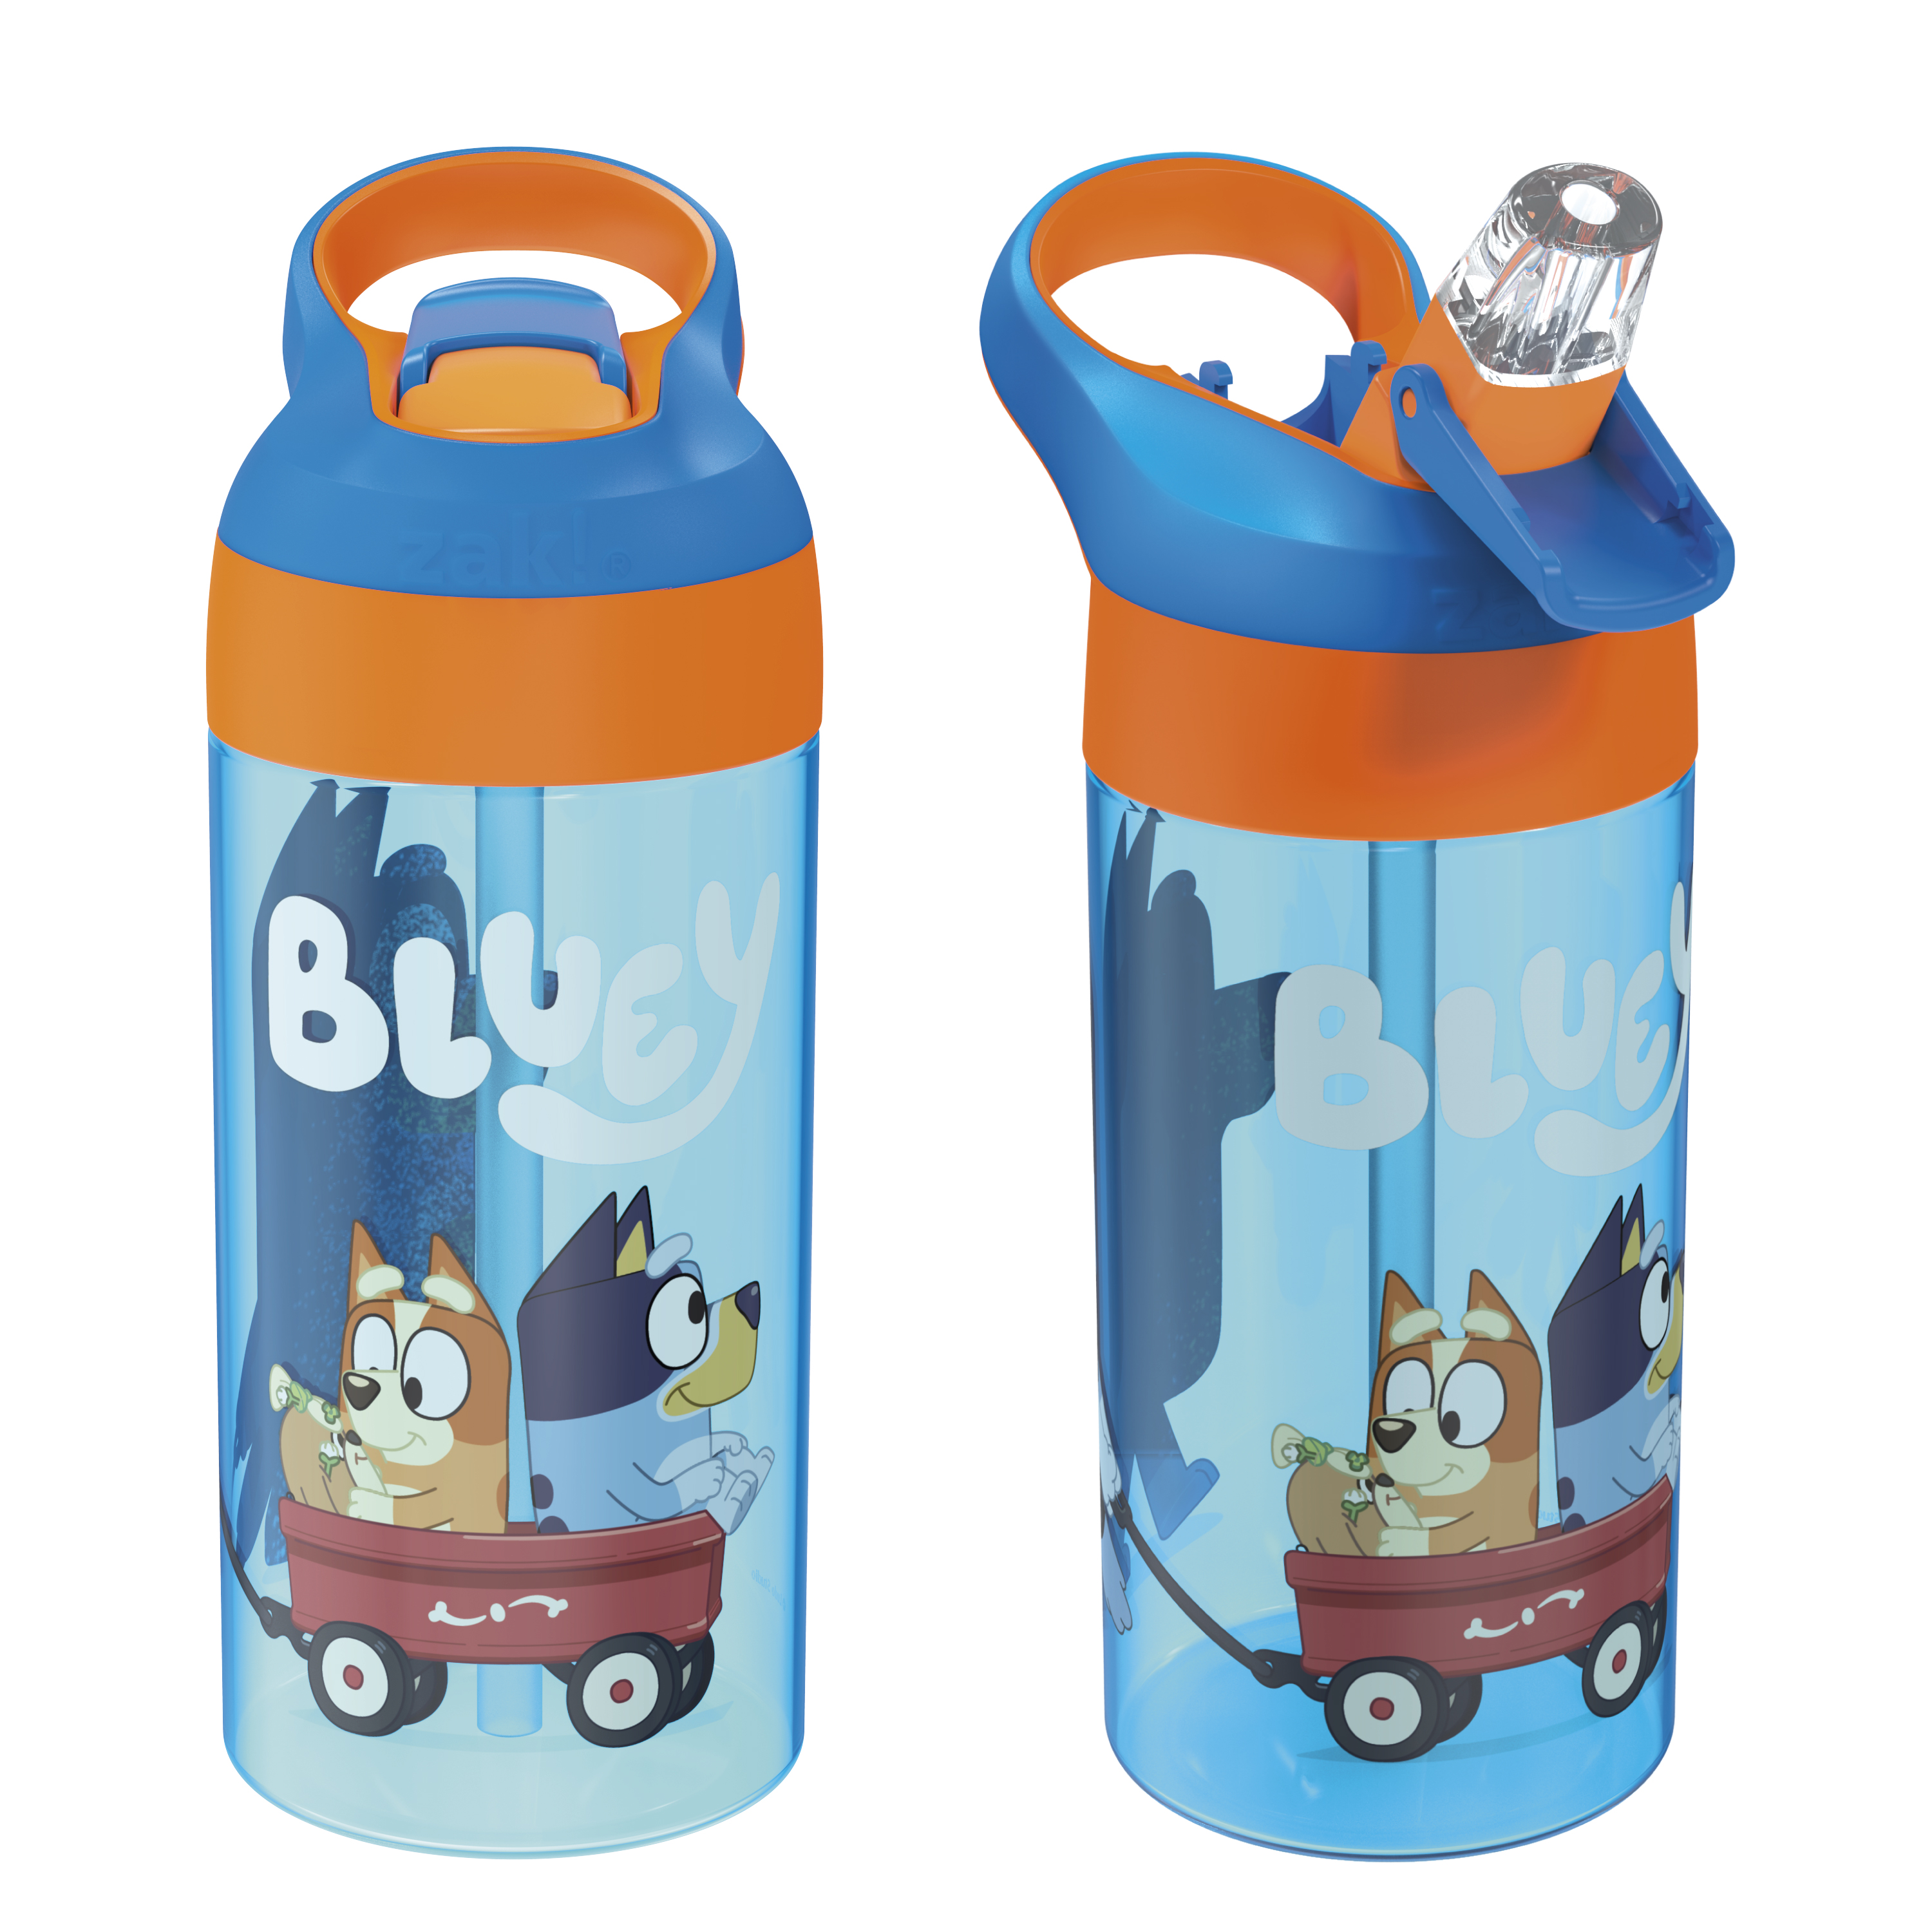 Bluey 17.5 ounce Water Bottle, Bingo and Bluey, 2-piece set slideshow image 1